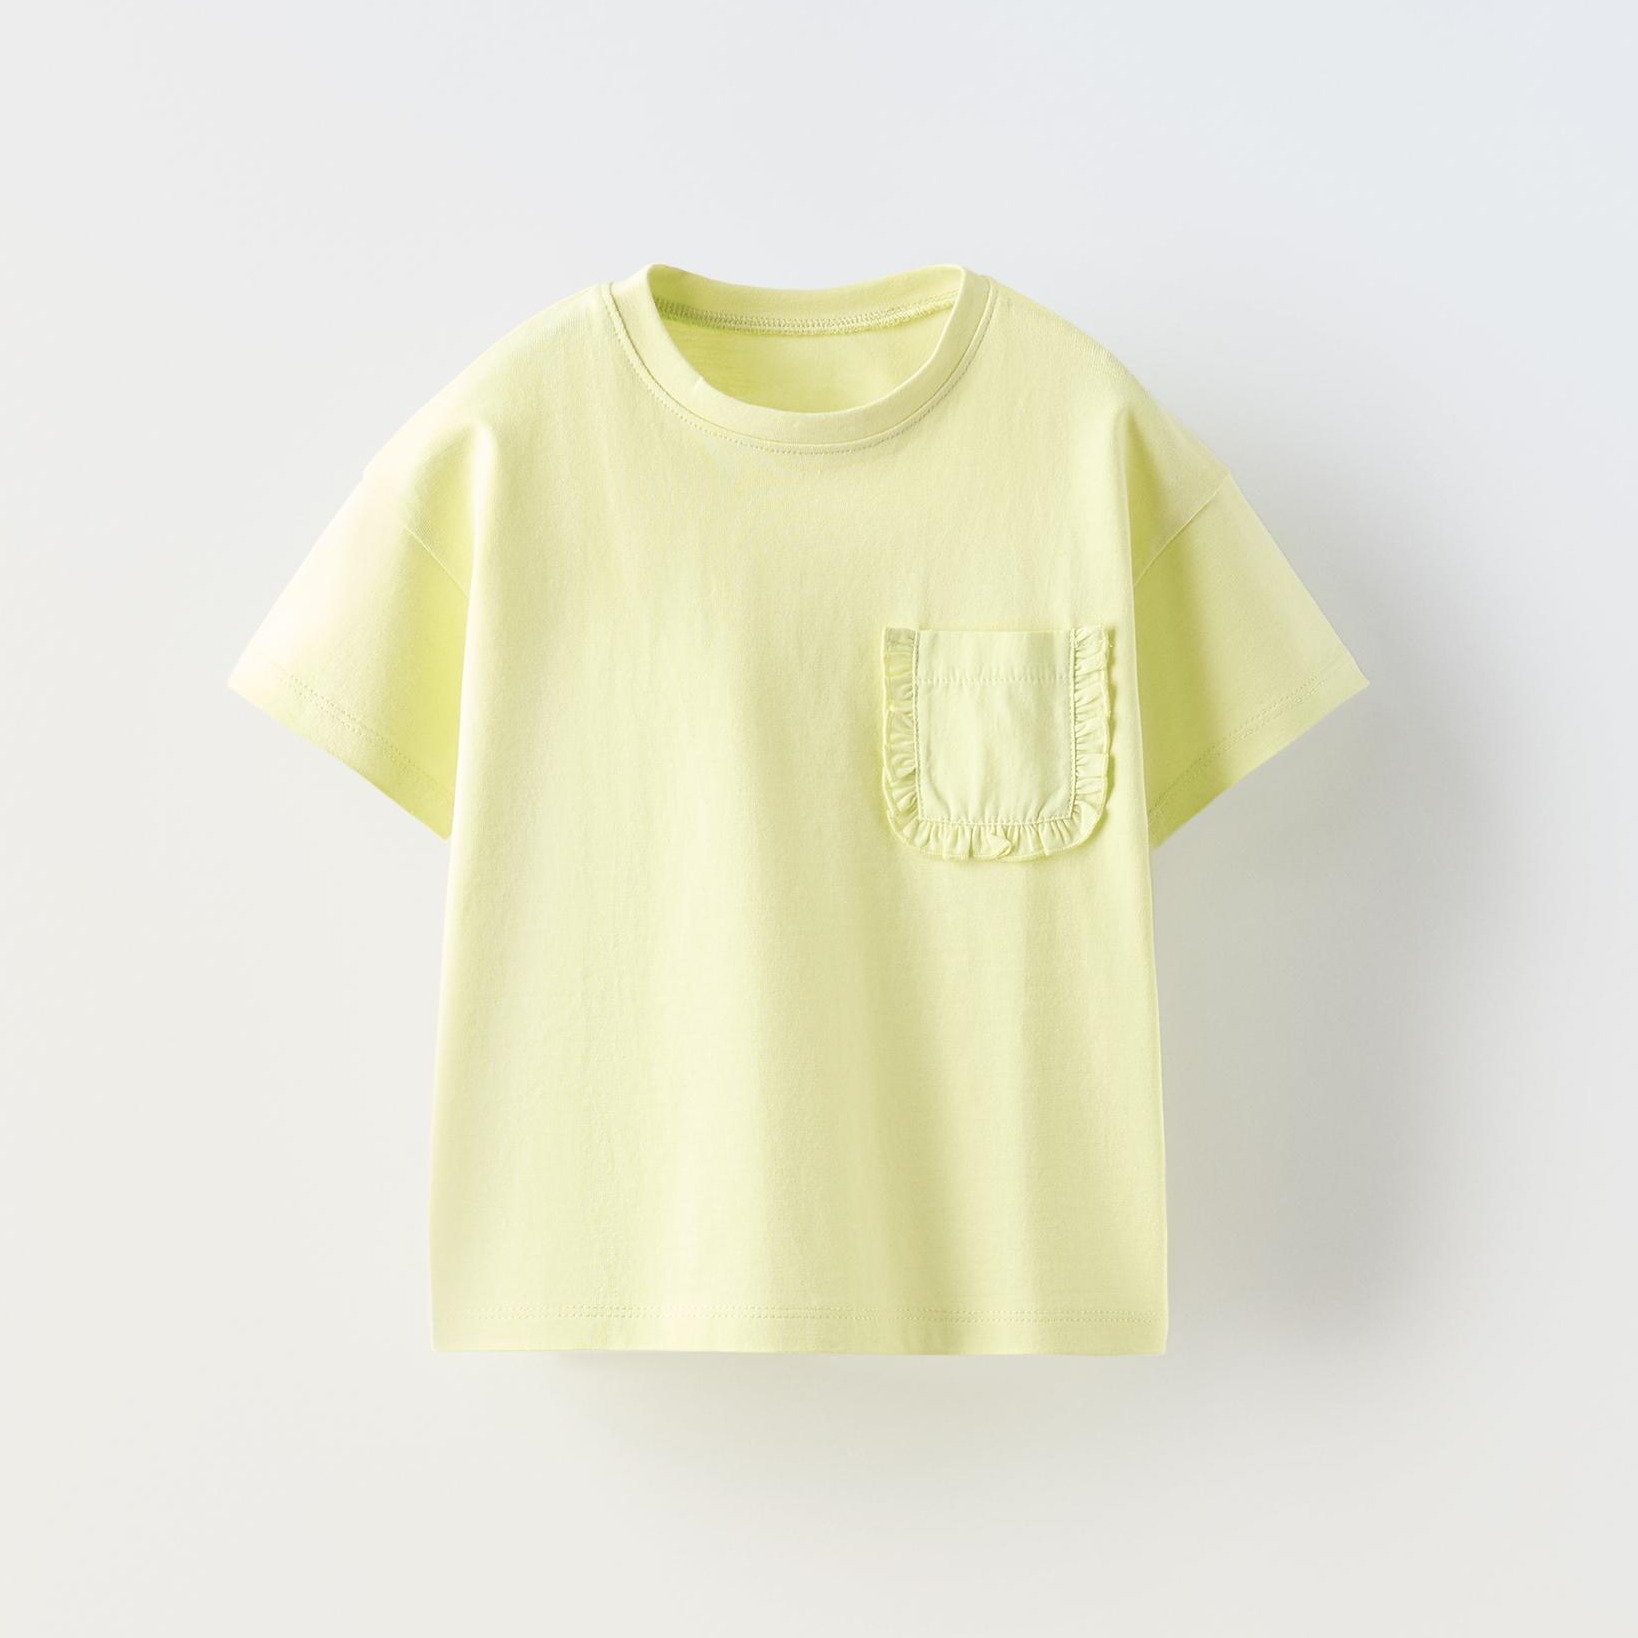 Футболка Zara Summer Camp Plain Pocket, желто-зеленый женское платье макси с коротким рукавом фонариком круглым вырезом и оборками